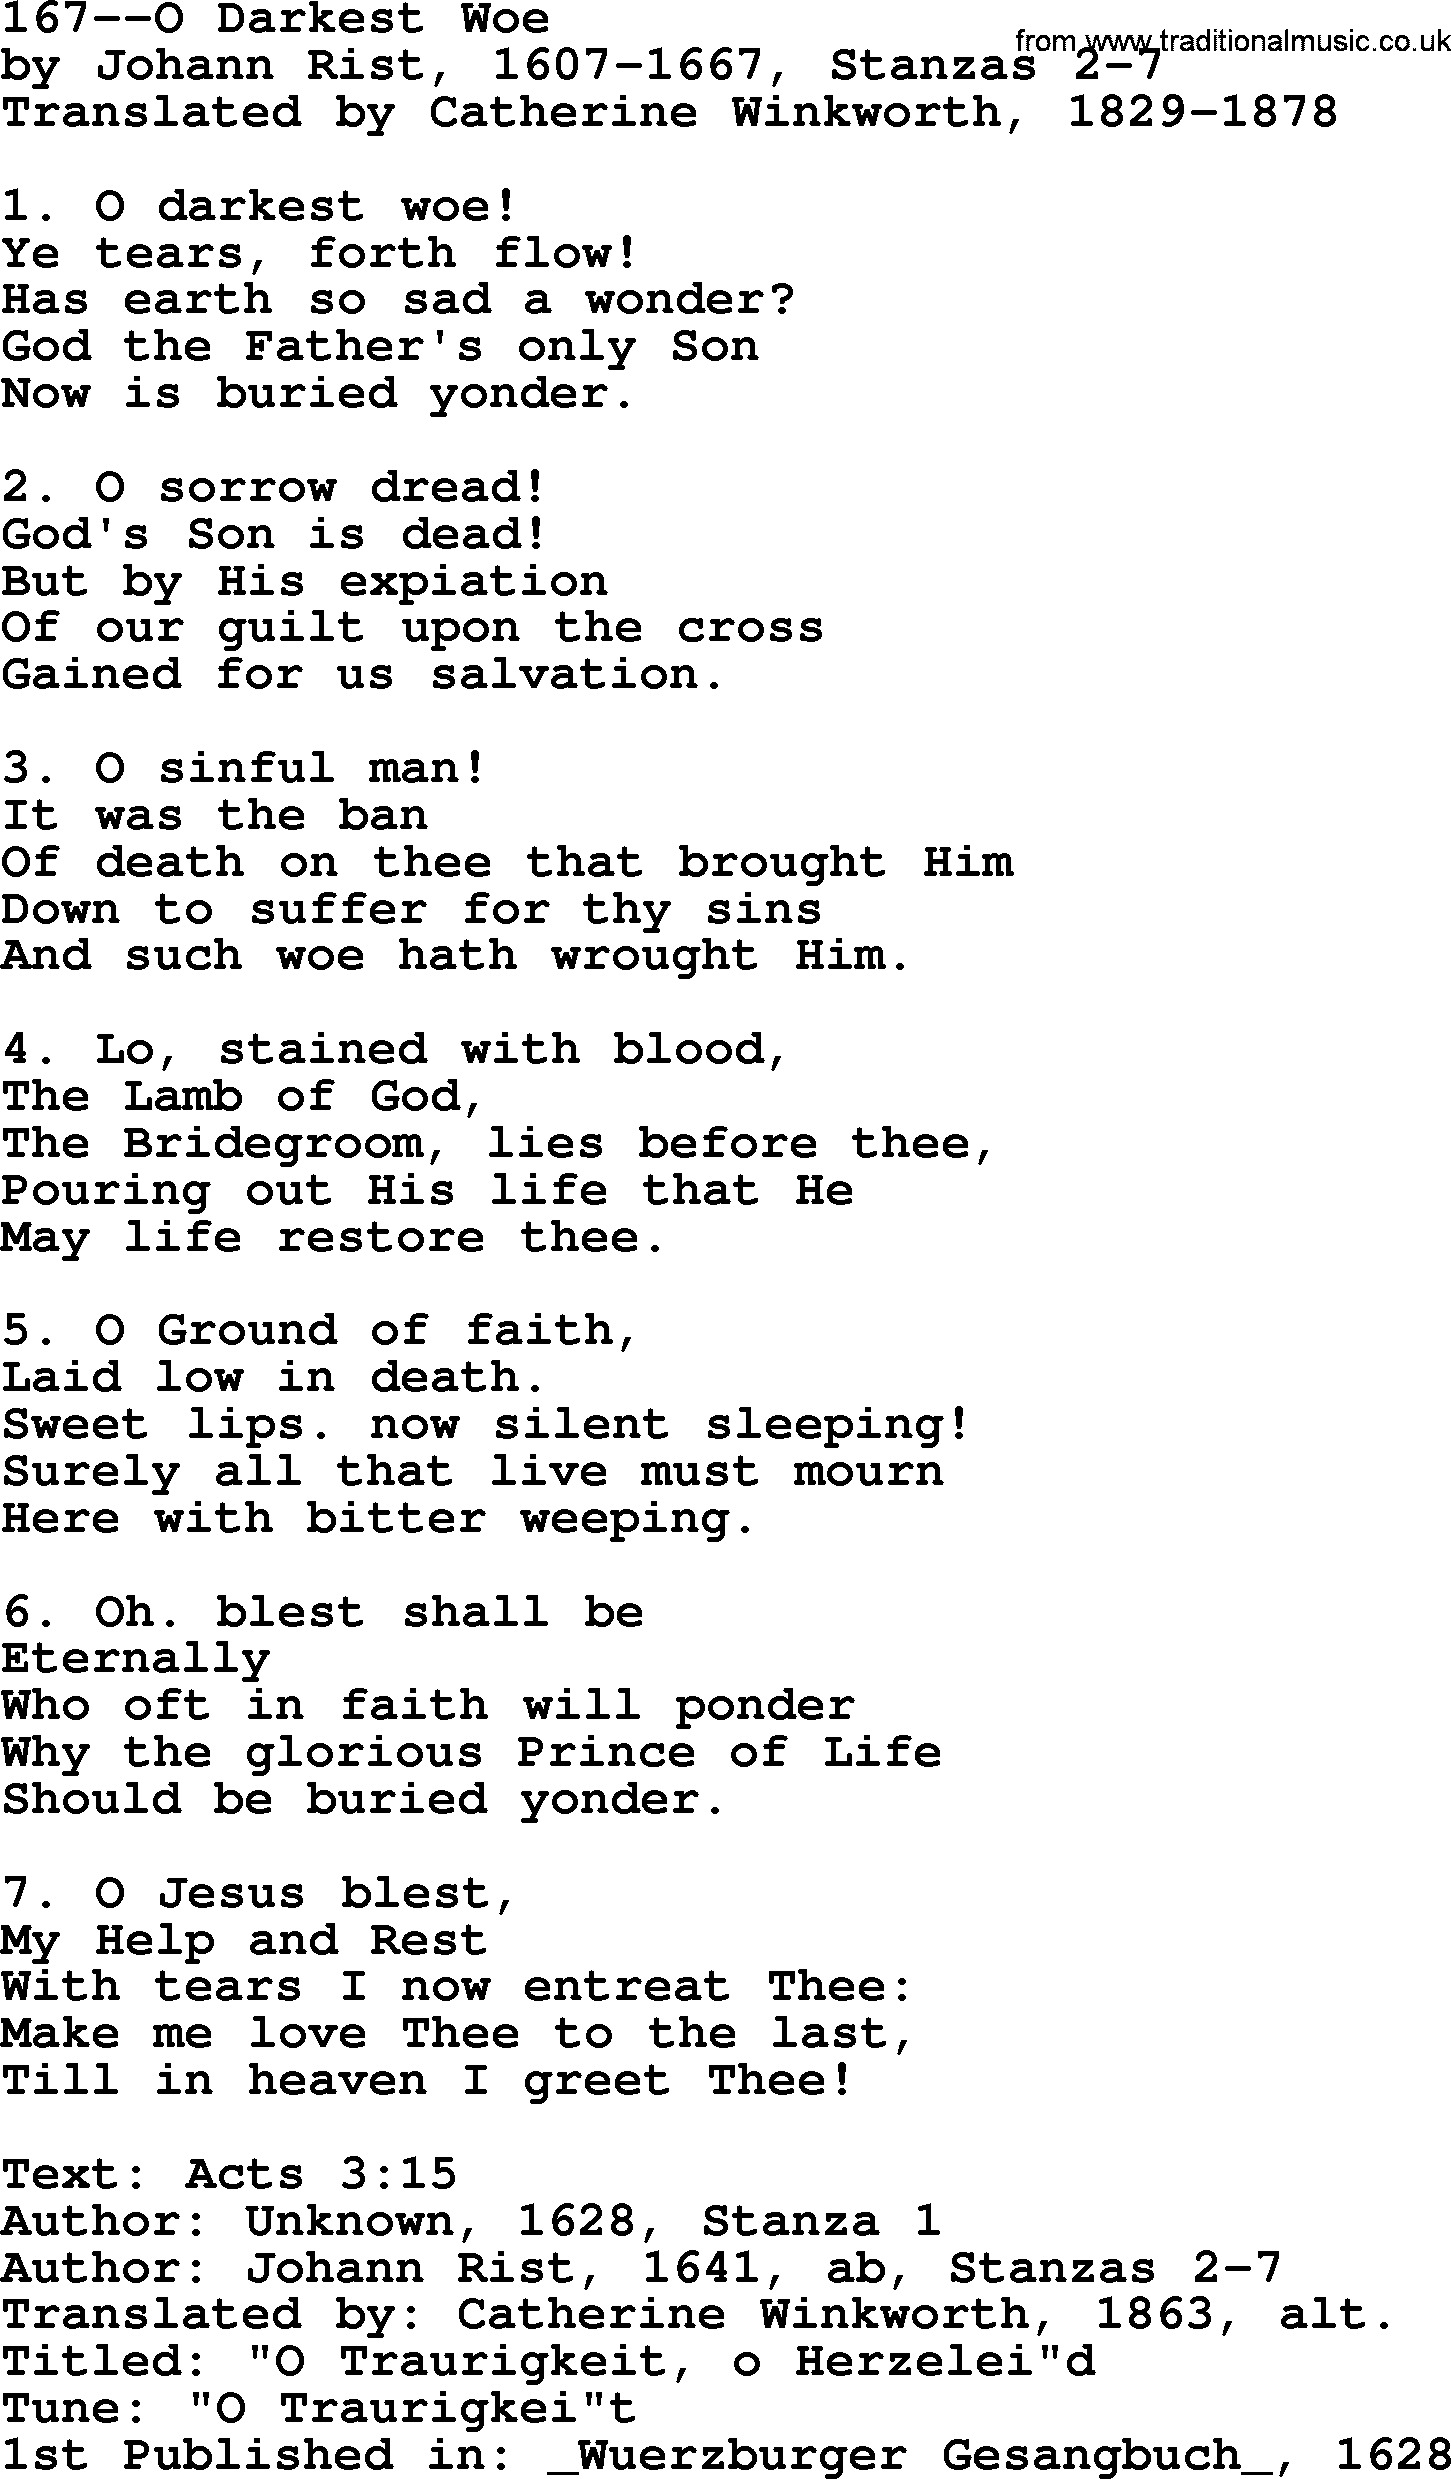 Lutheran Hymn: 167--O Darkest Woe.txt lyrics with PDF